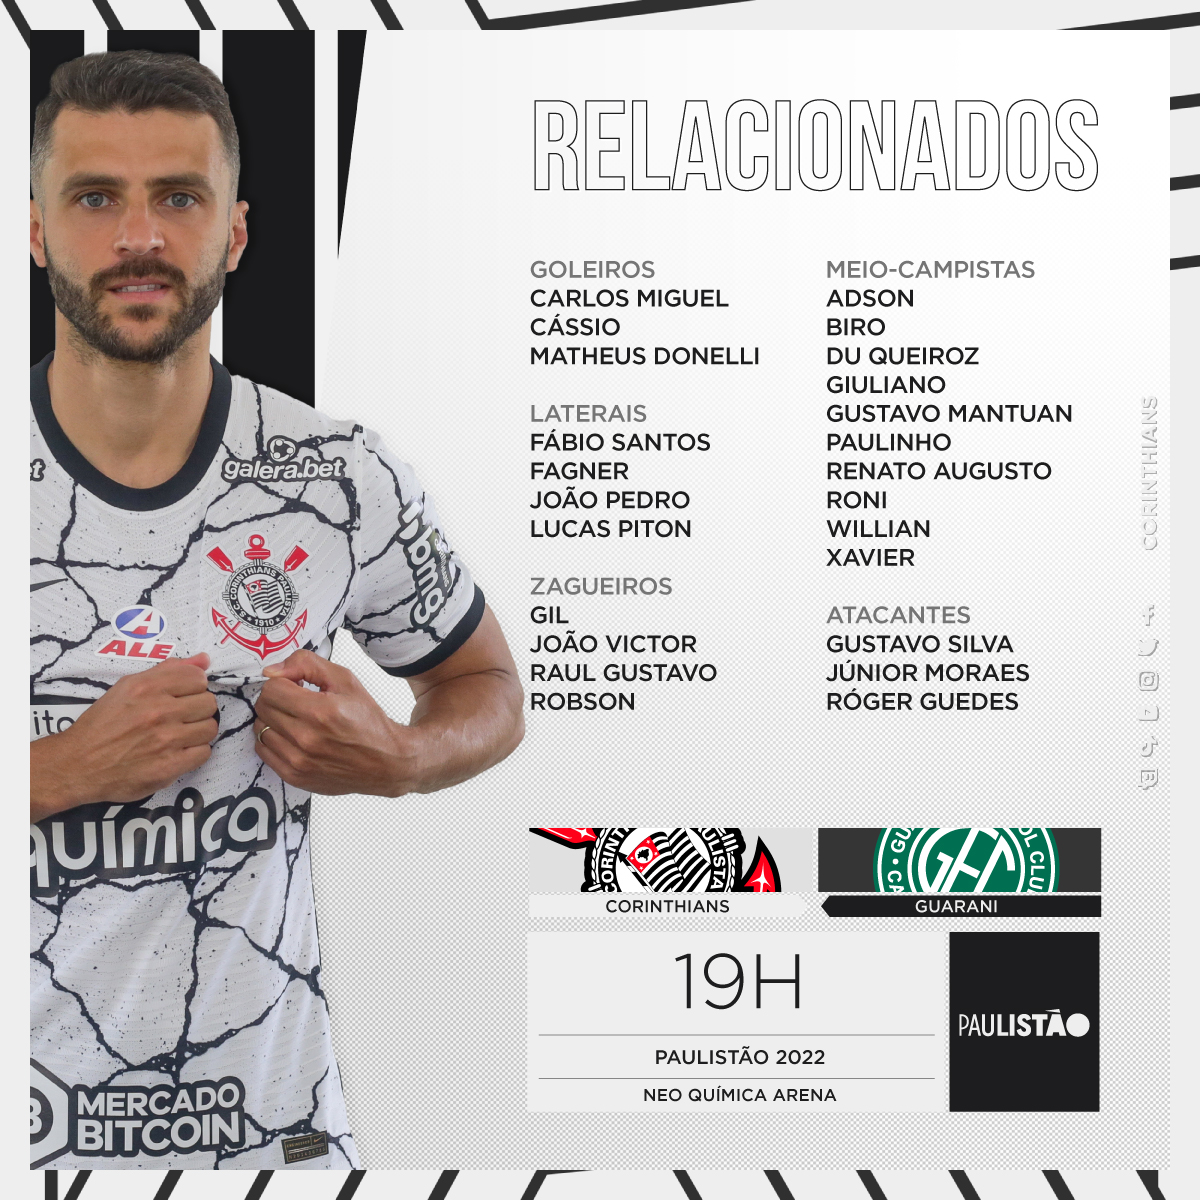 Para a partida, o @Corinthians conta com novidade! 

O centroavante Júnior Moraes pode fazer sua estreia, após ser anunciada a sua contratação na semana passada.
 
O jogador já pôde ser inscrito para a fase eliminatória e final do Paulistão. 

#NeoArenaENM 